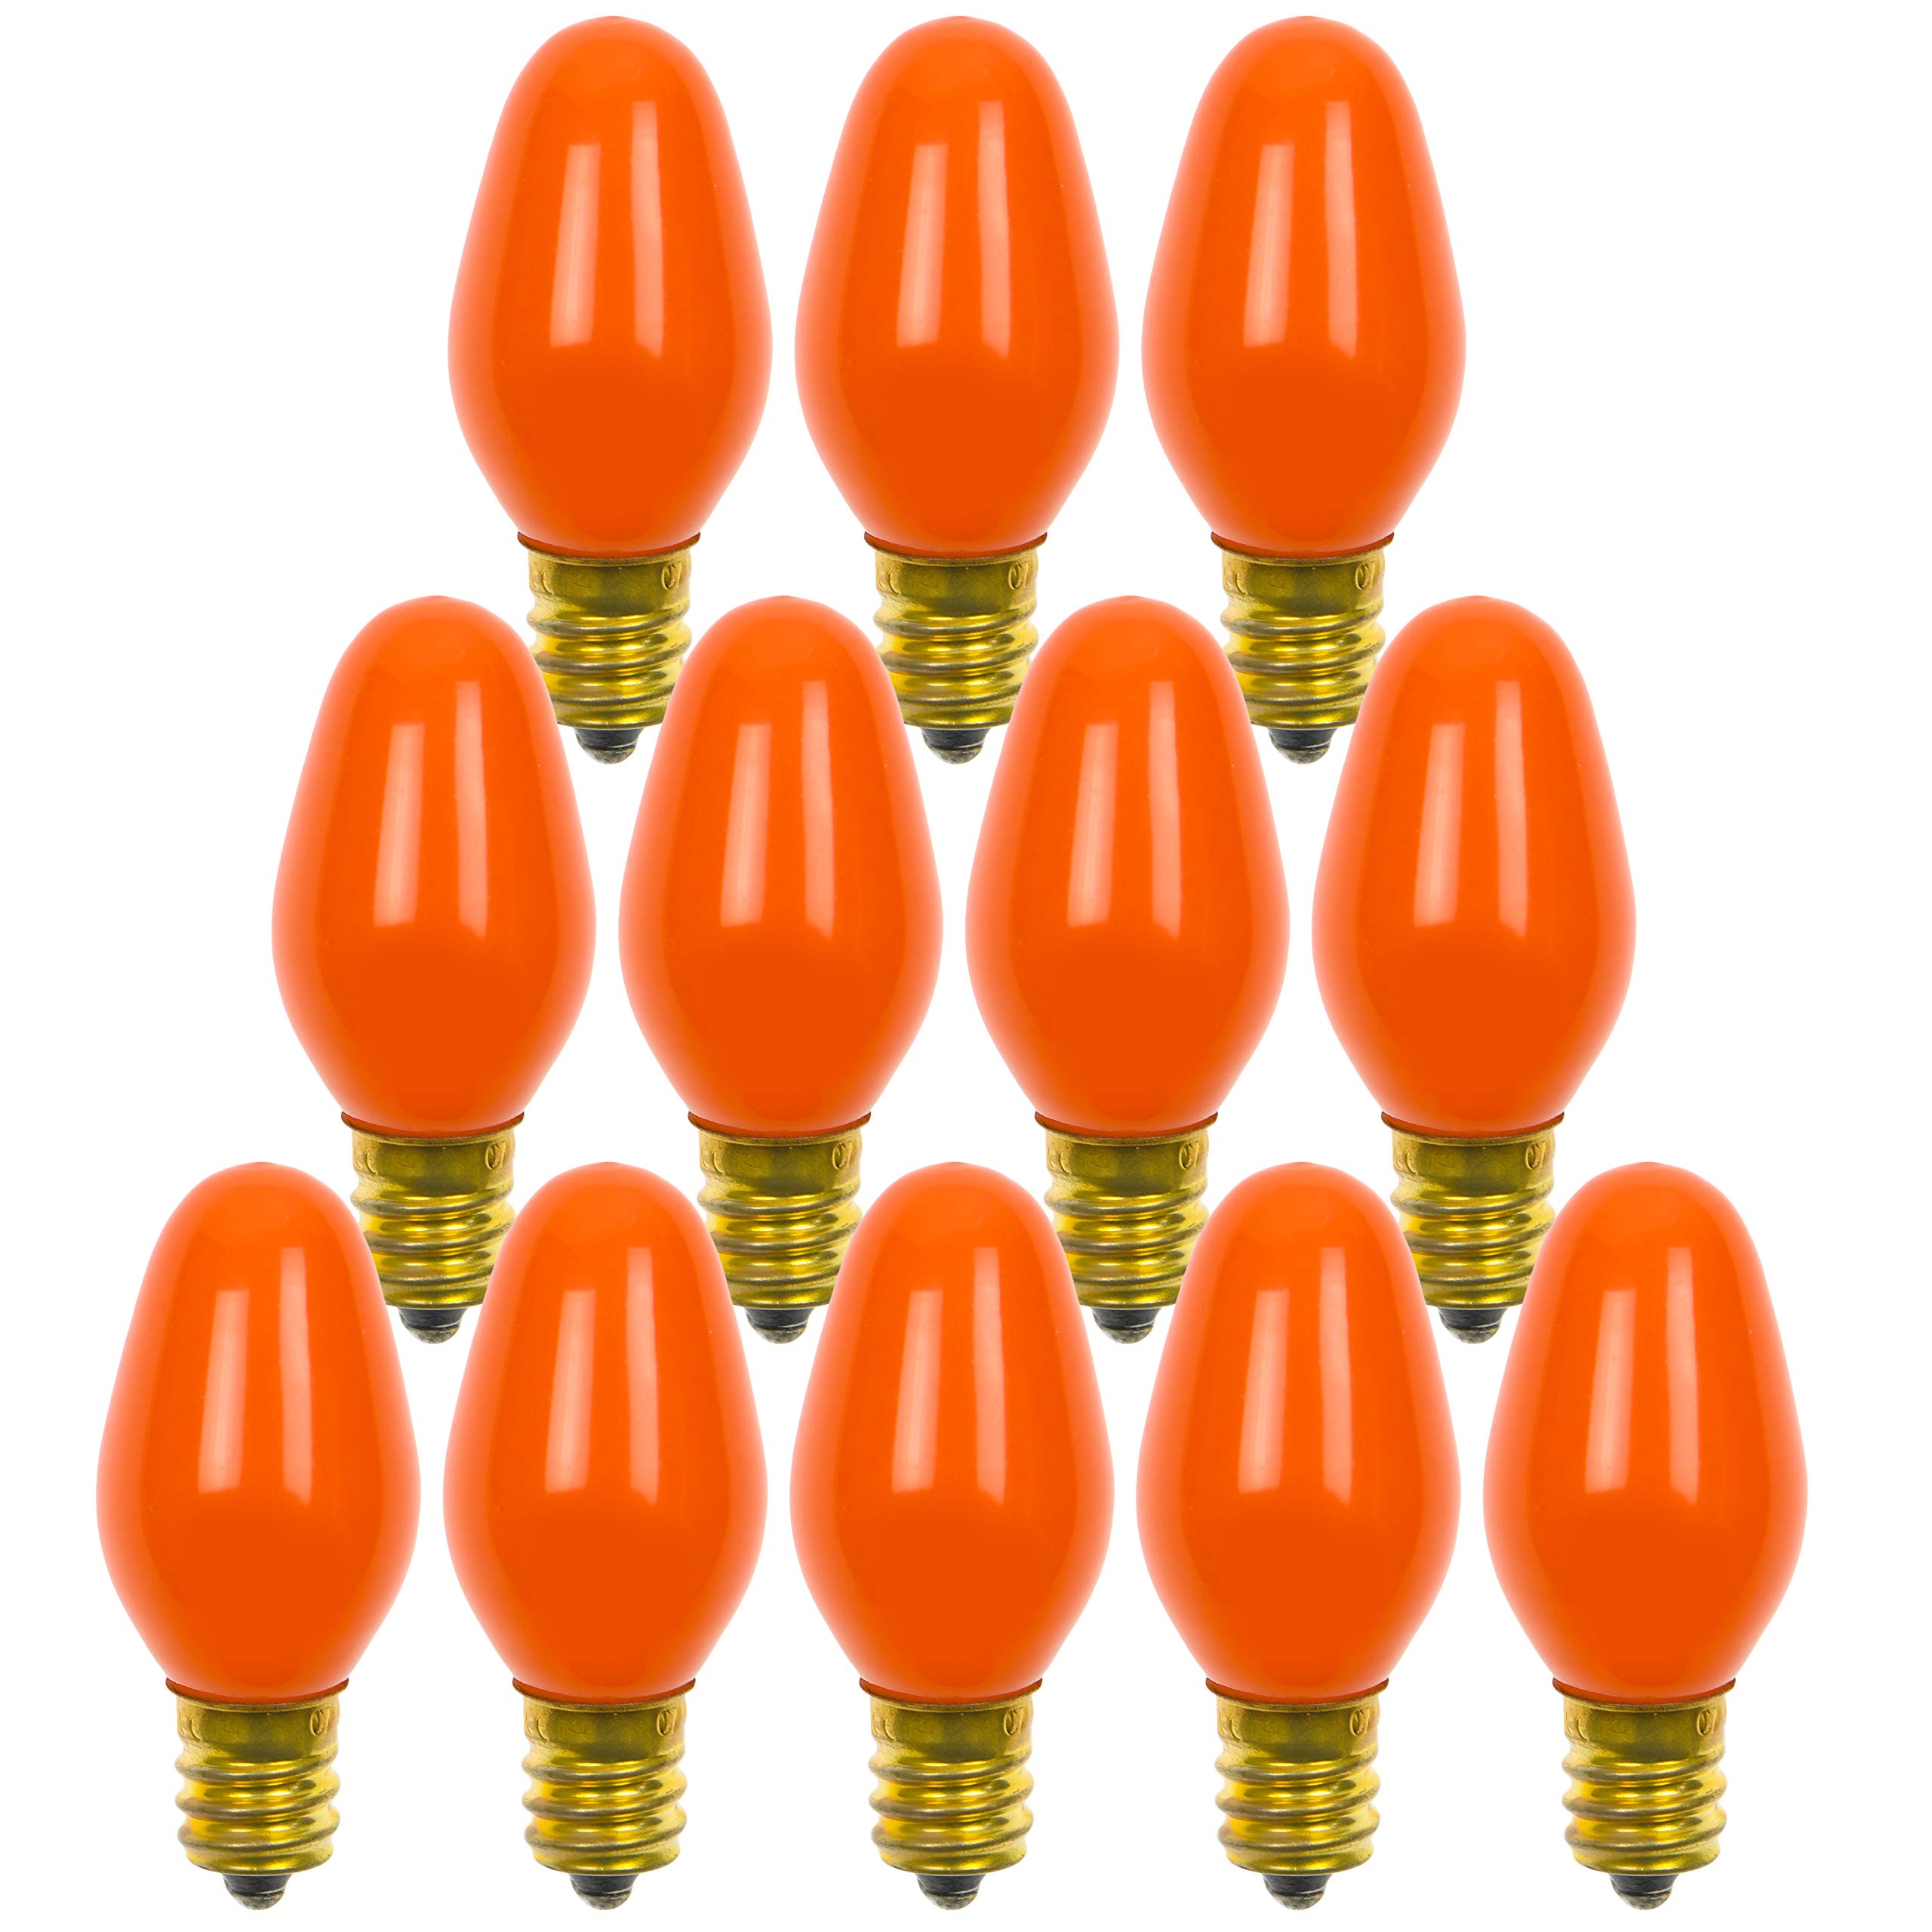 12 Pack C7 Orange Light Bulb Ceramic Incandescent 7 Watt E12 Base C7 Night Light Colored Bulb Candelabra Based Orange Bulb Halloween Bulb